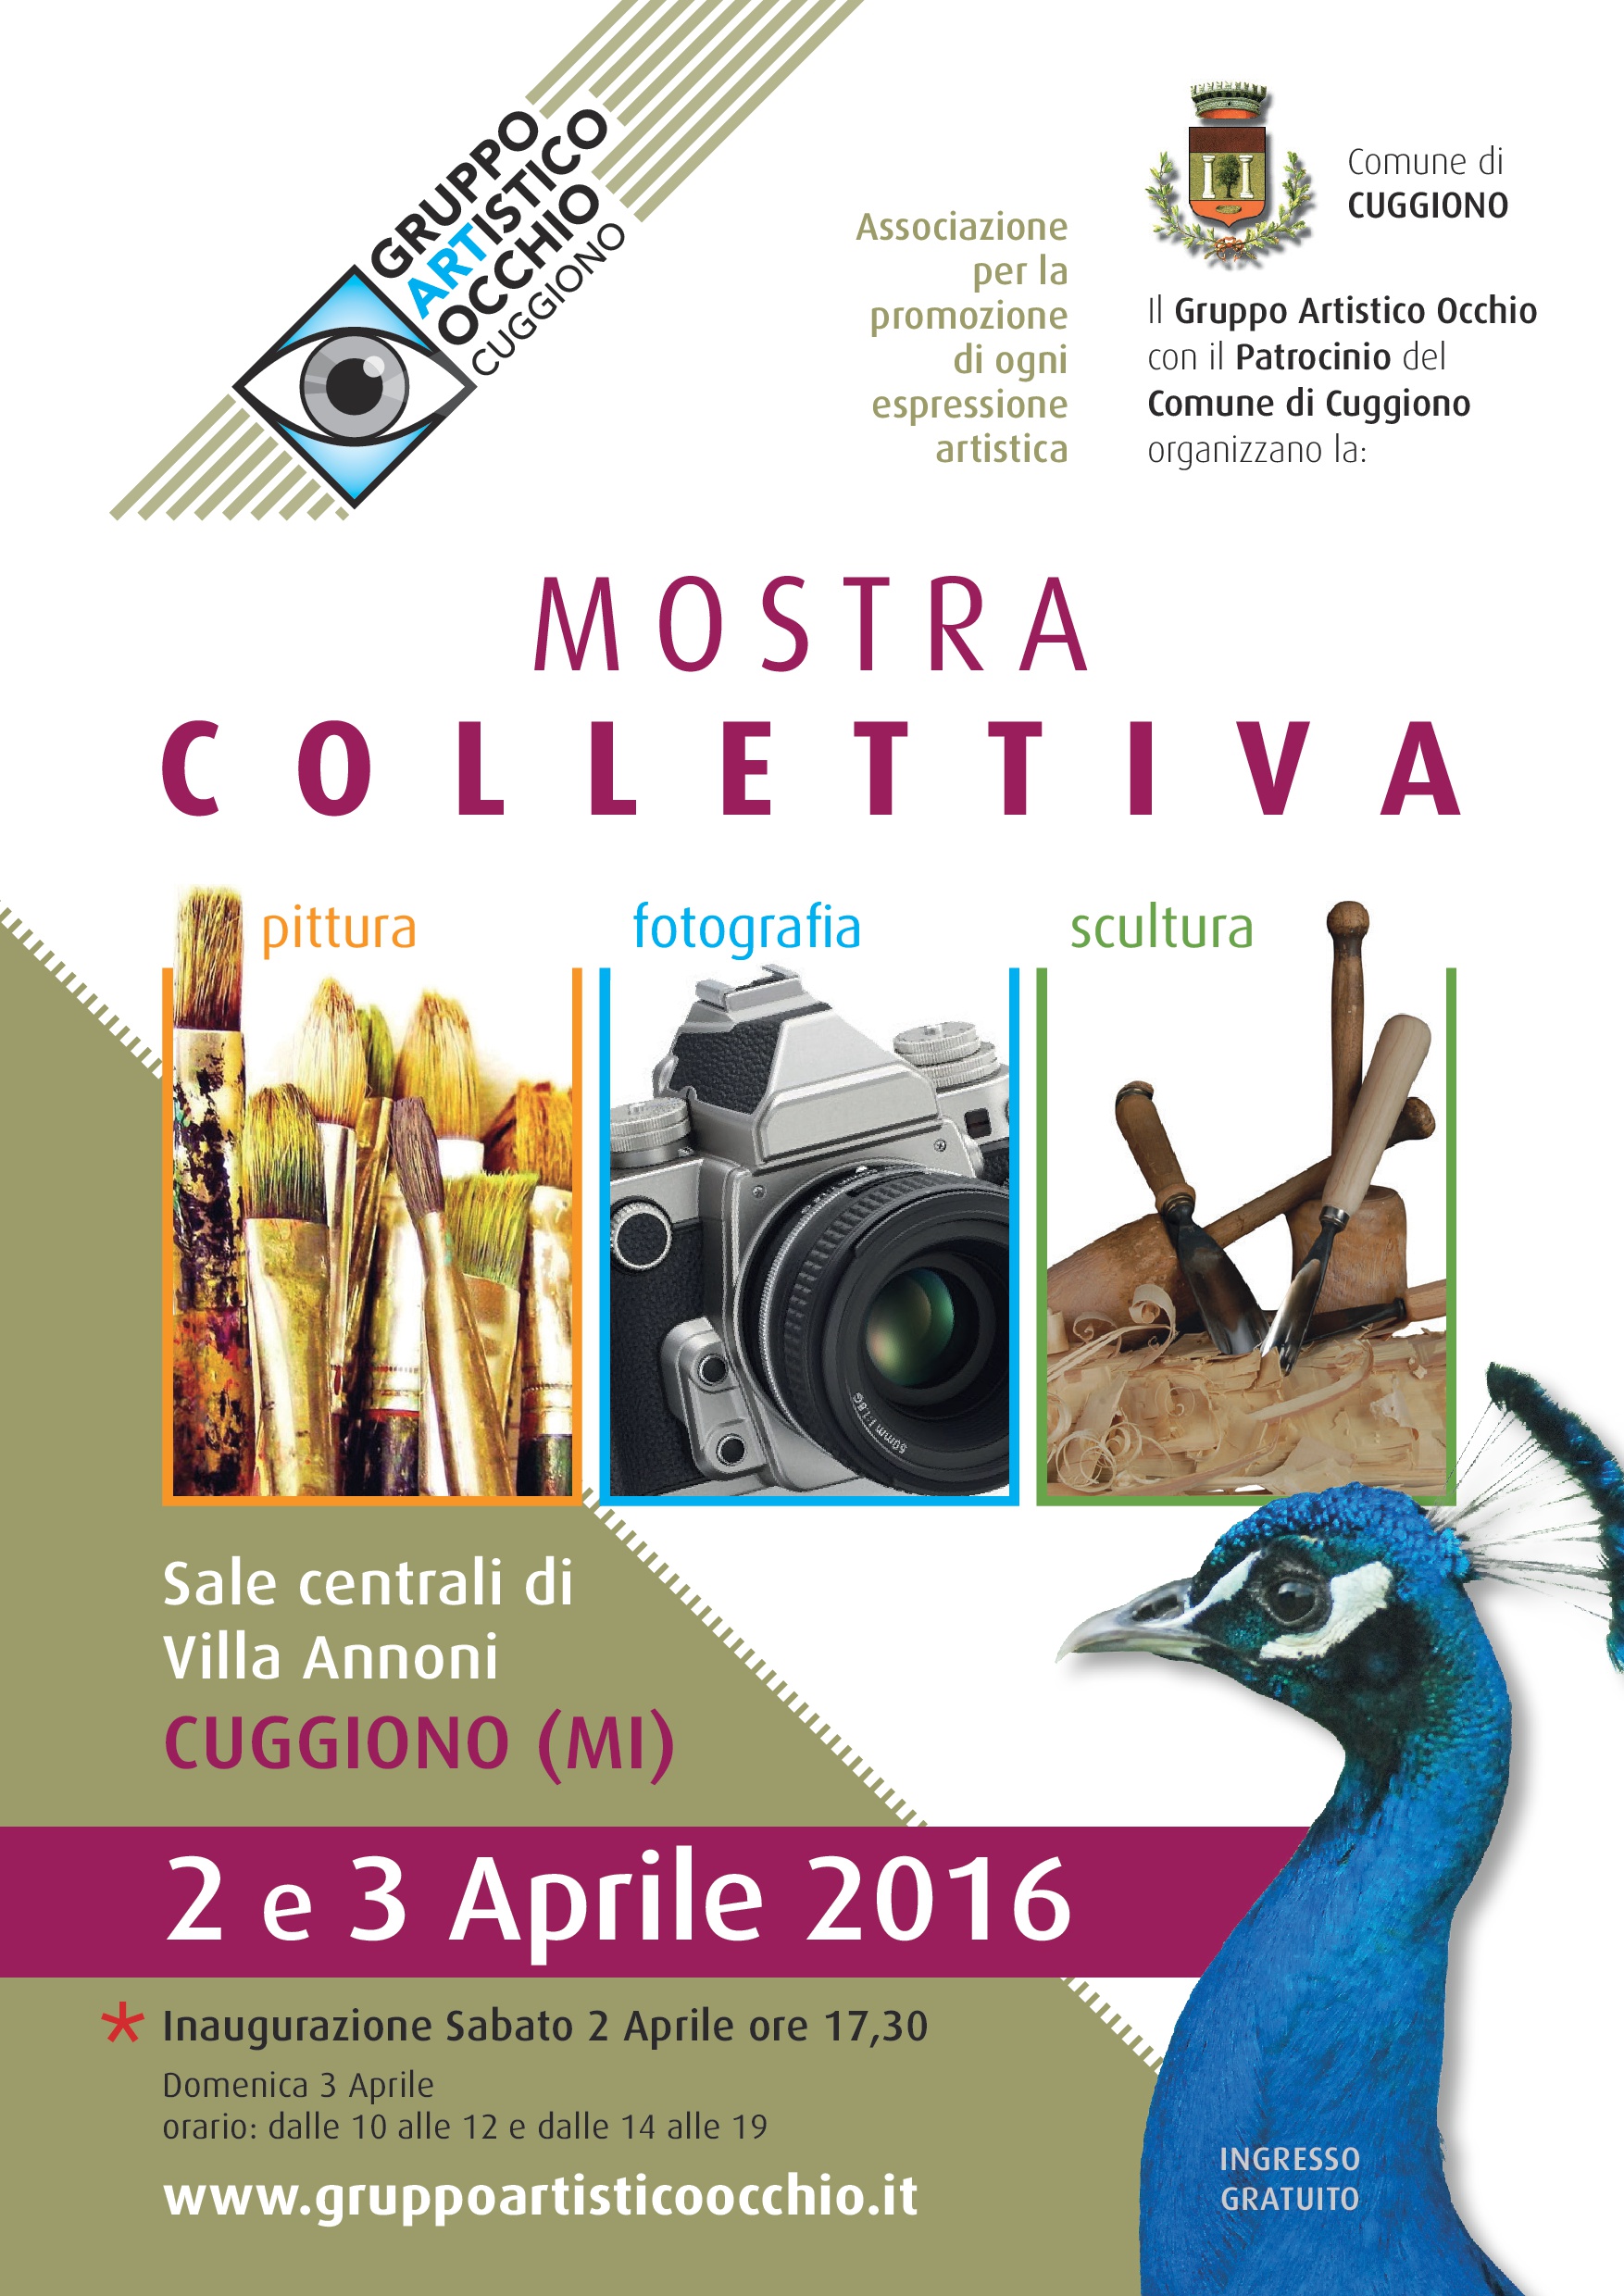 Anno 2016 Sabato 2 e domenica 3 Aprile 2016 Il Gruppo Artistico Occhio ha organizzato una Mostra  Collettiva dei propri artisti presso le Sale Centrali di Villa Annoni a Cuggiono.